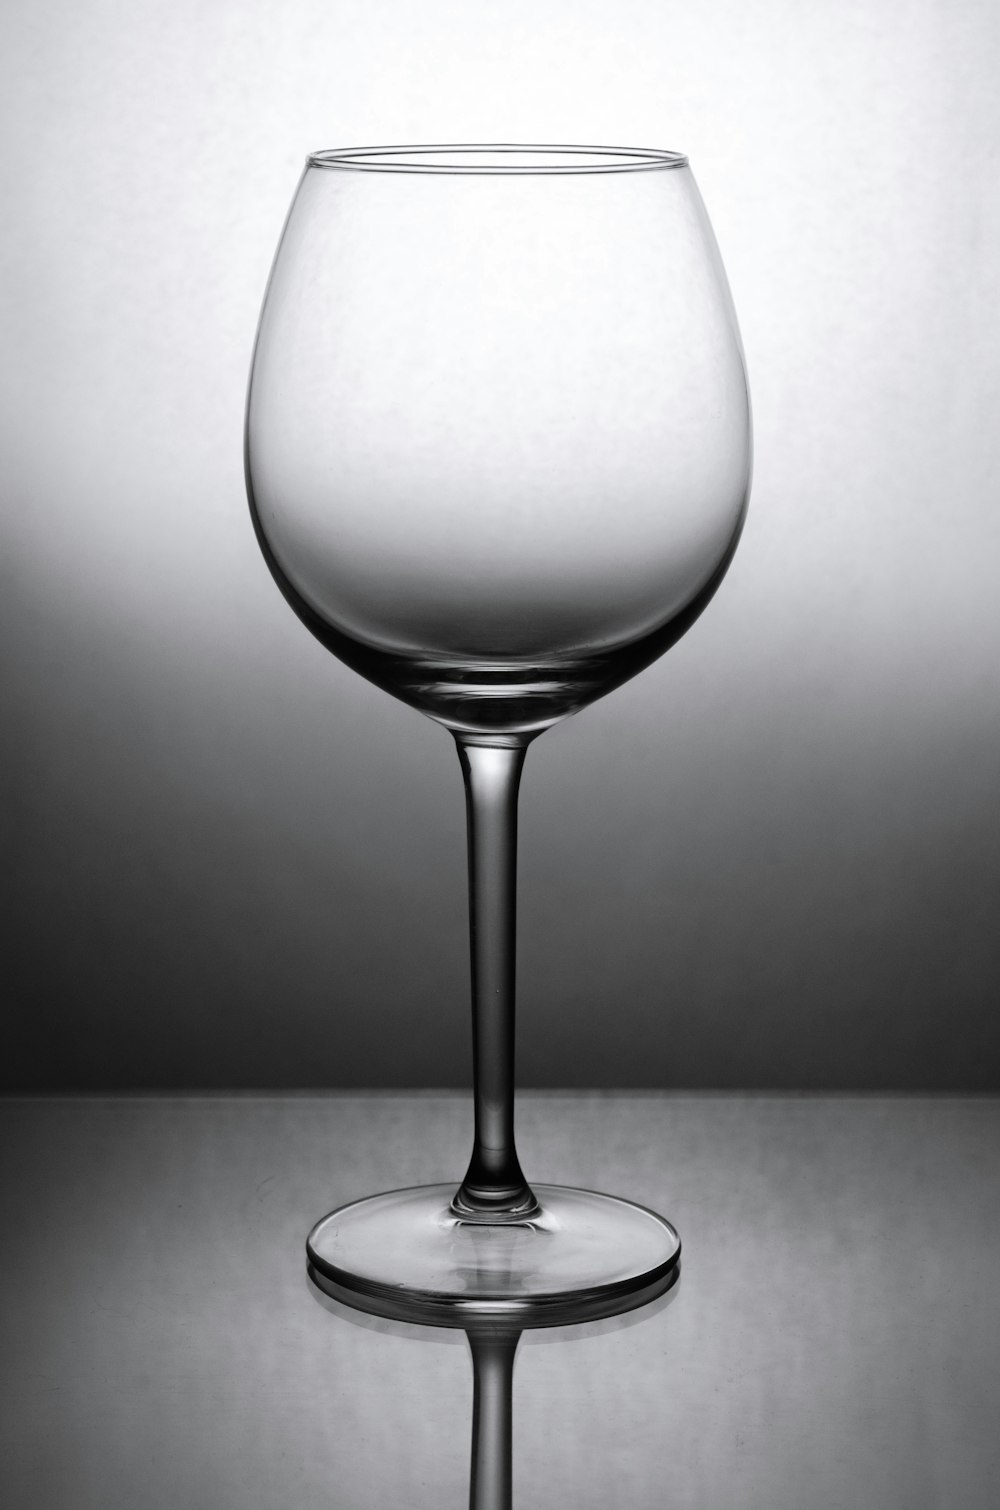 ワイングラスのグレースケール写真